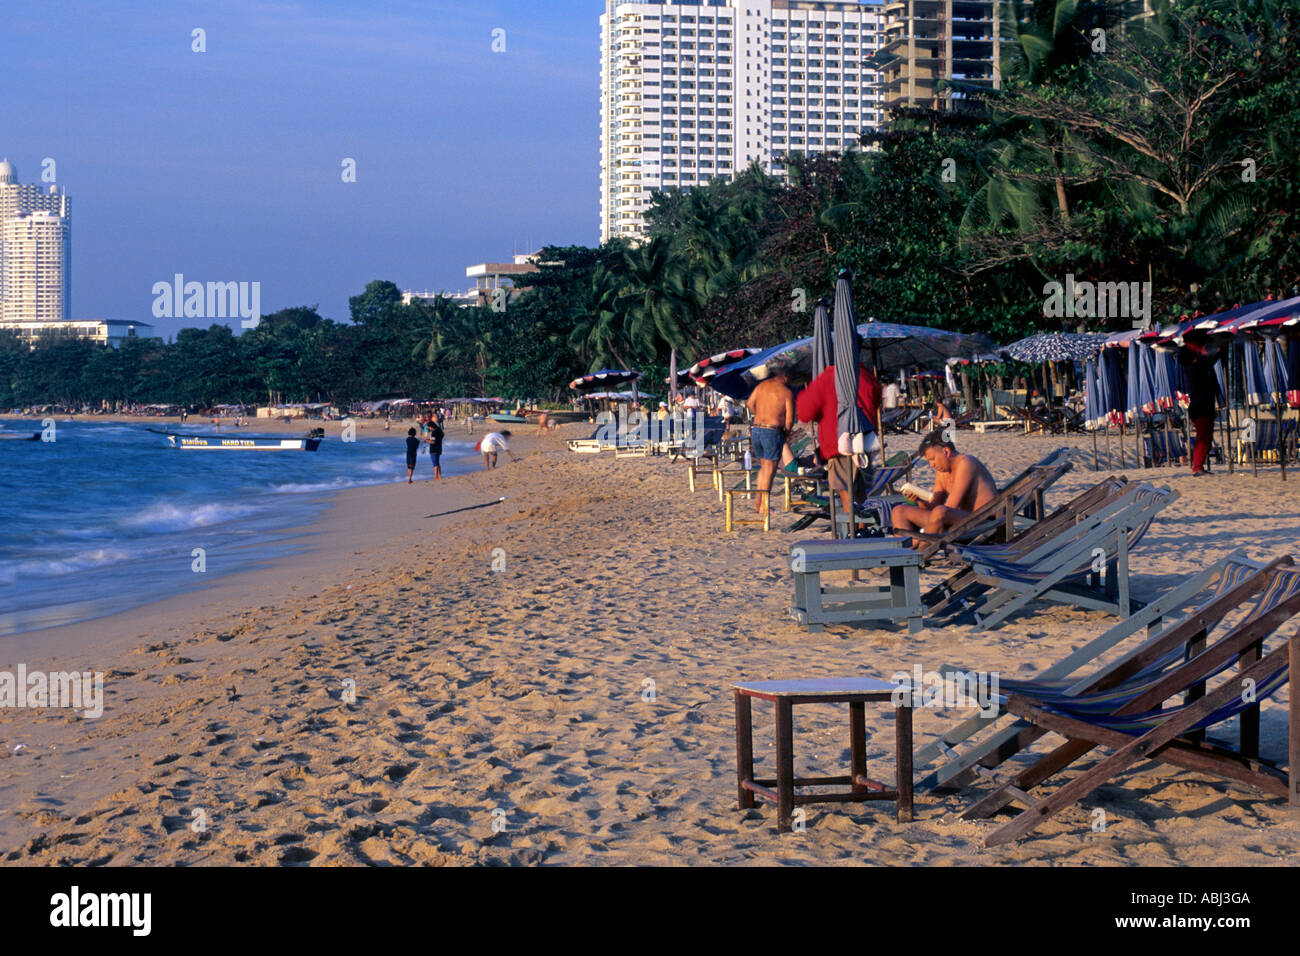 Beach and facilities at Pattaya, Thailand Stock Photo